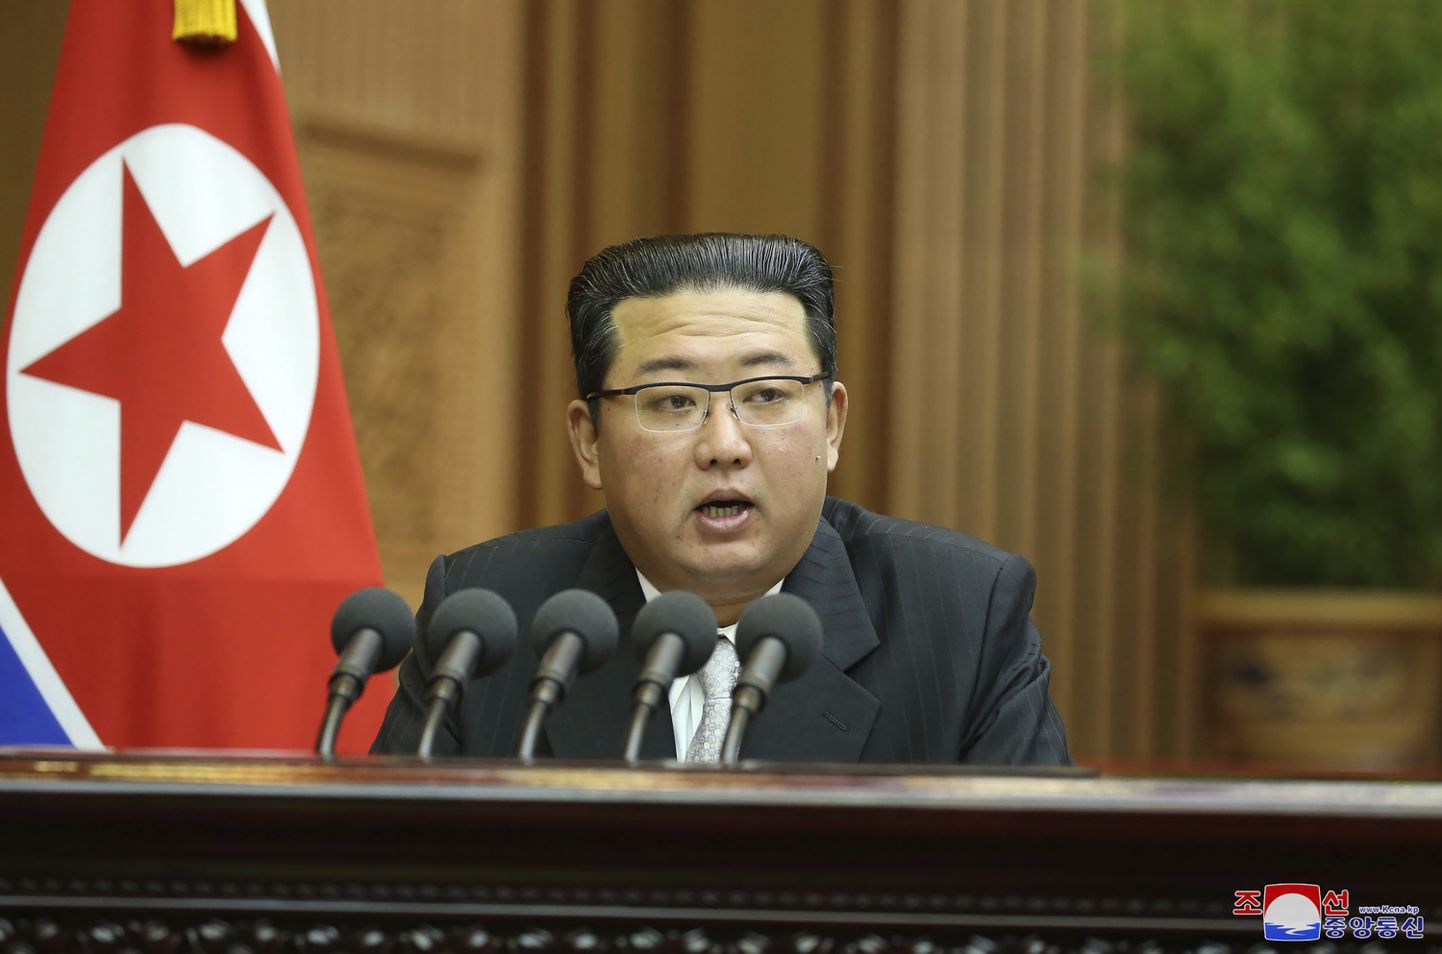 Põhja-Korea liider Kim Jong-un